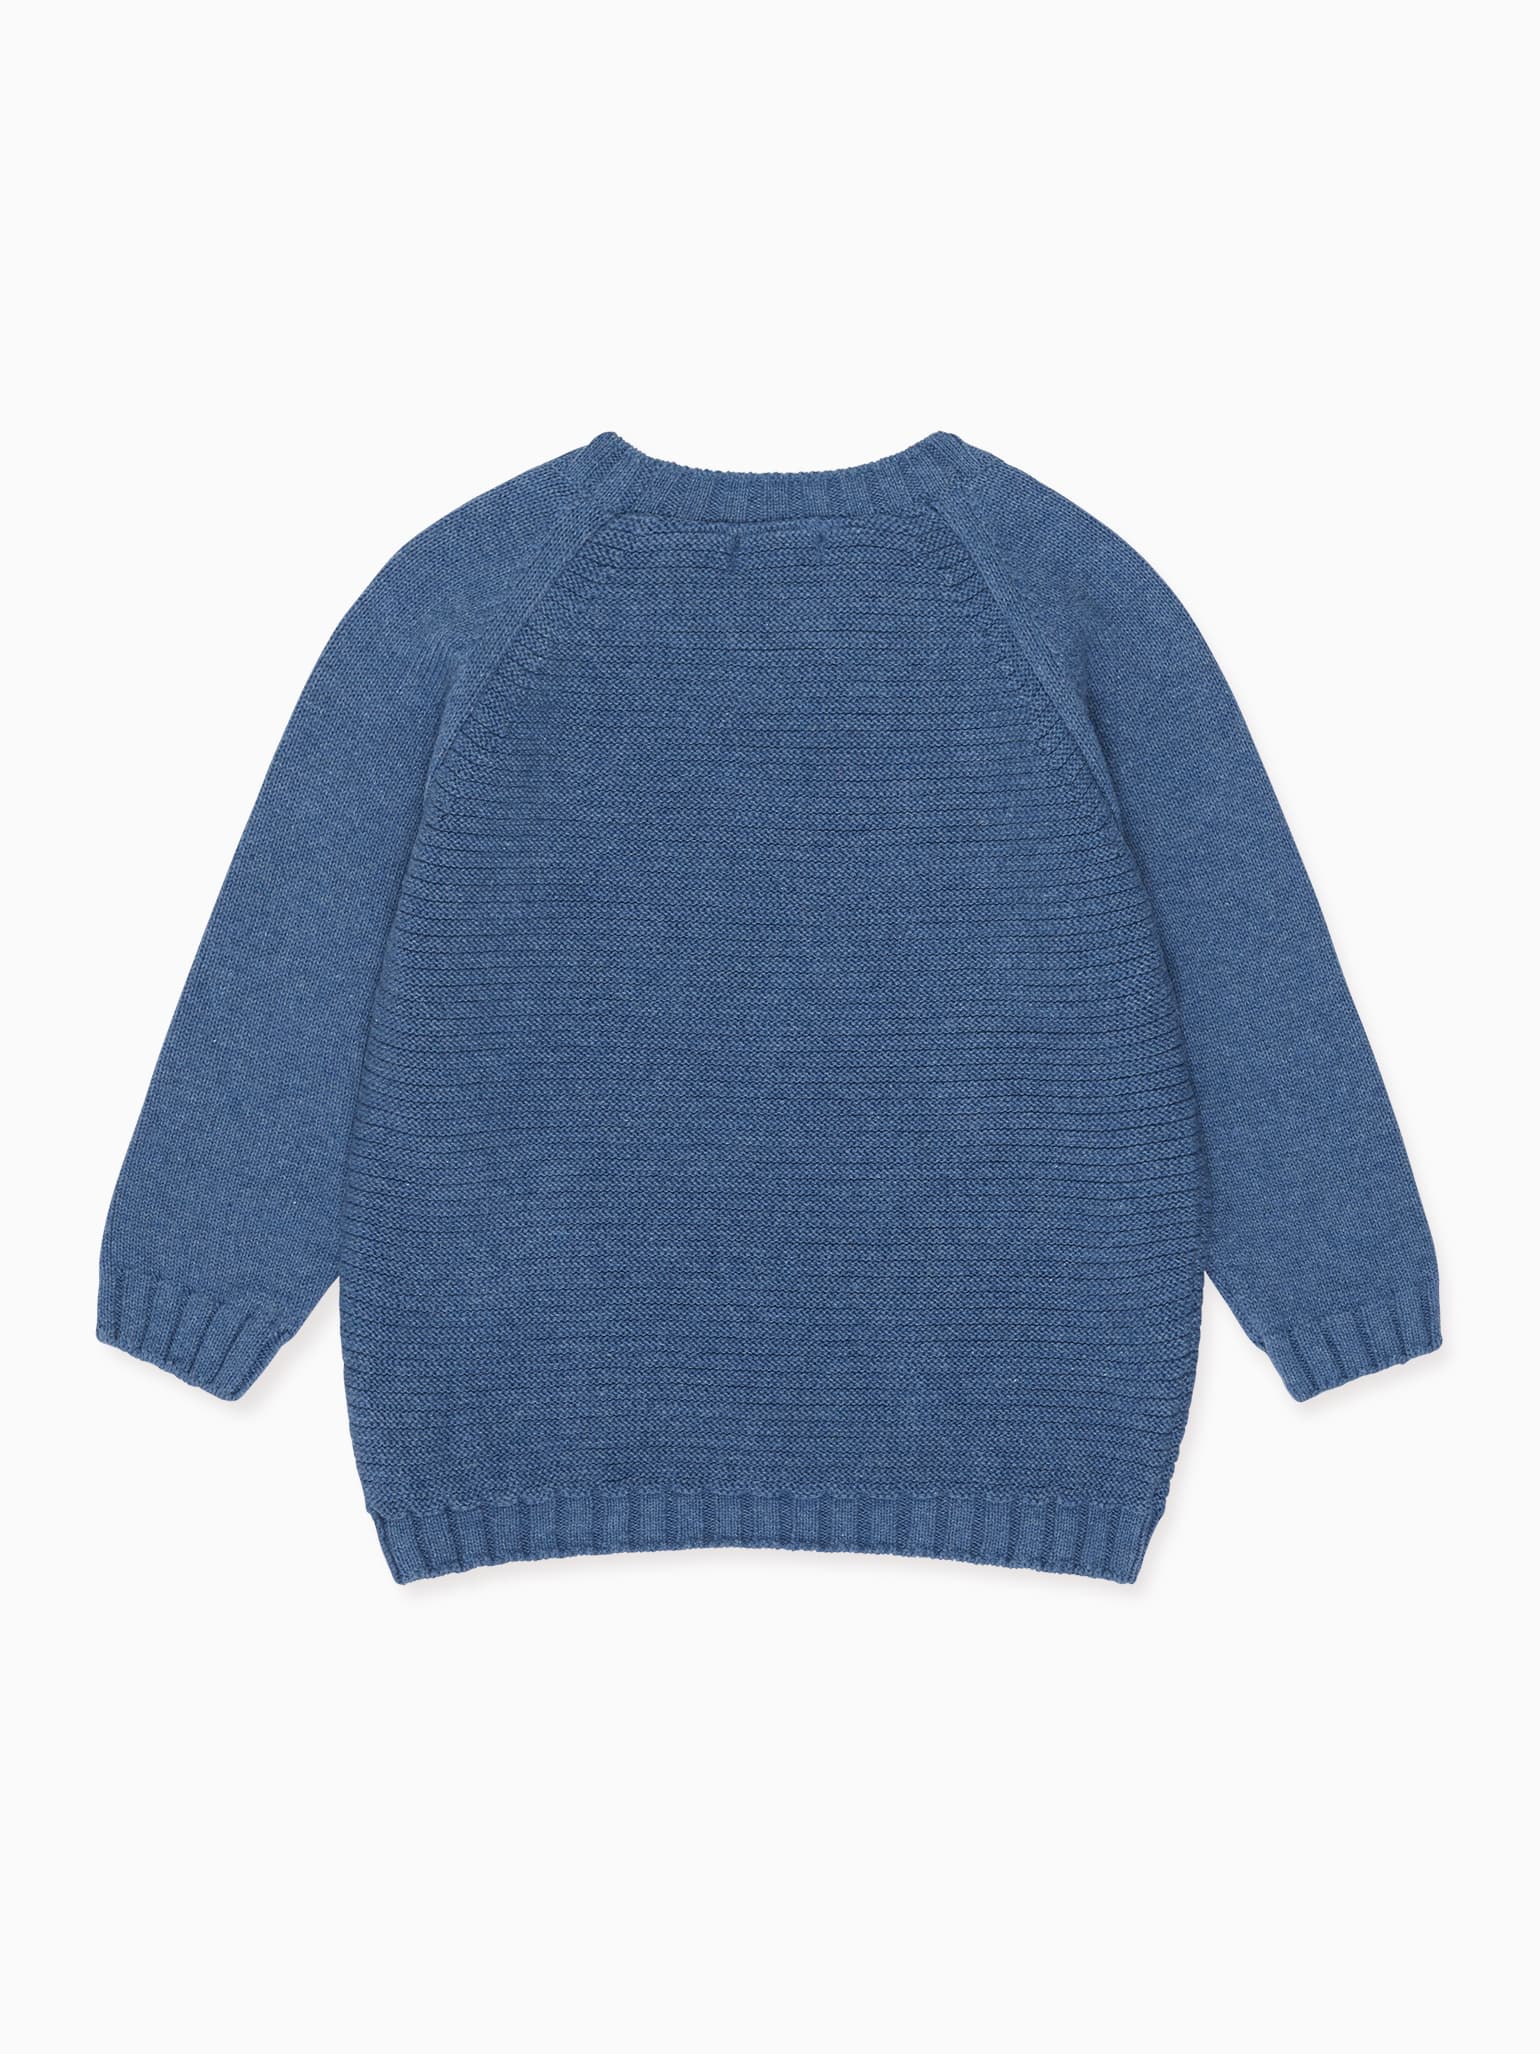 Dusty Blue Lorca Boy Cotton Sweater